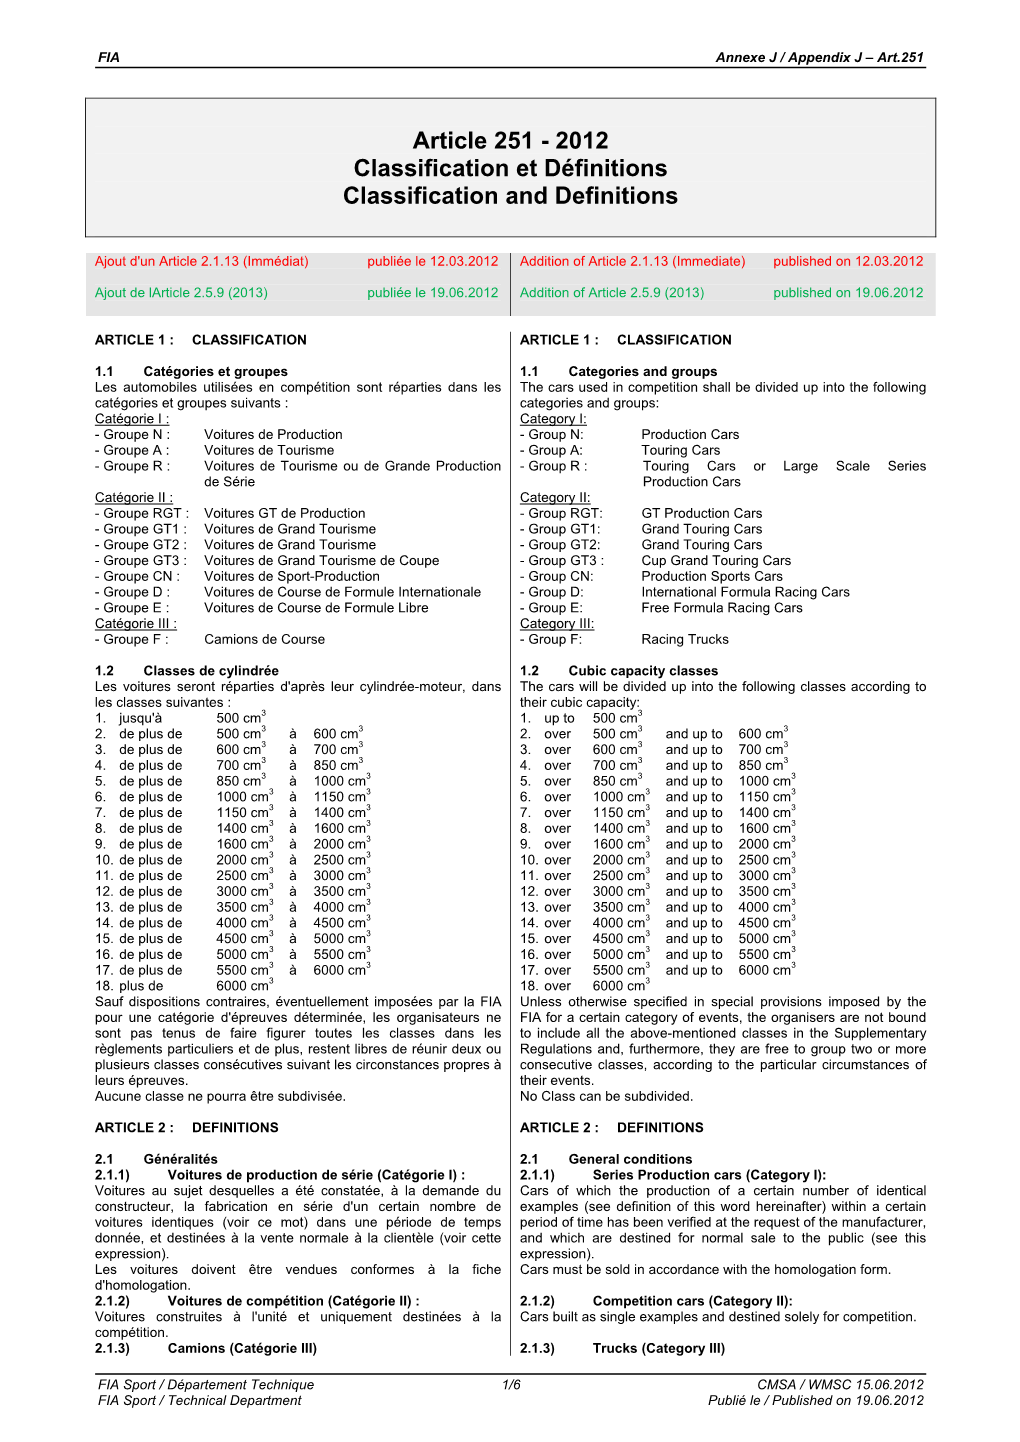 Classification Et Définitions Publié Le 19.06.2012